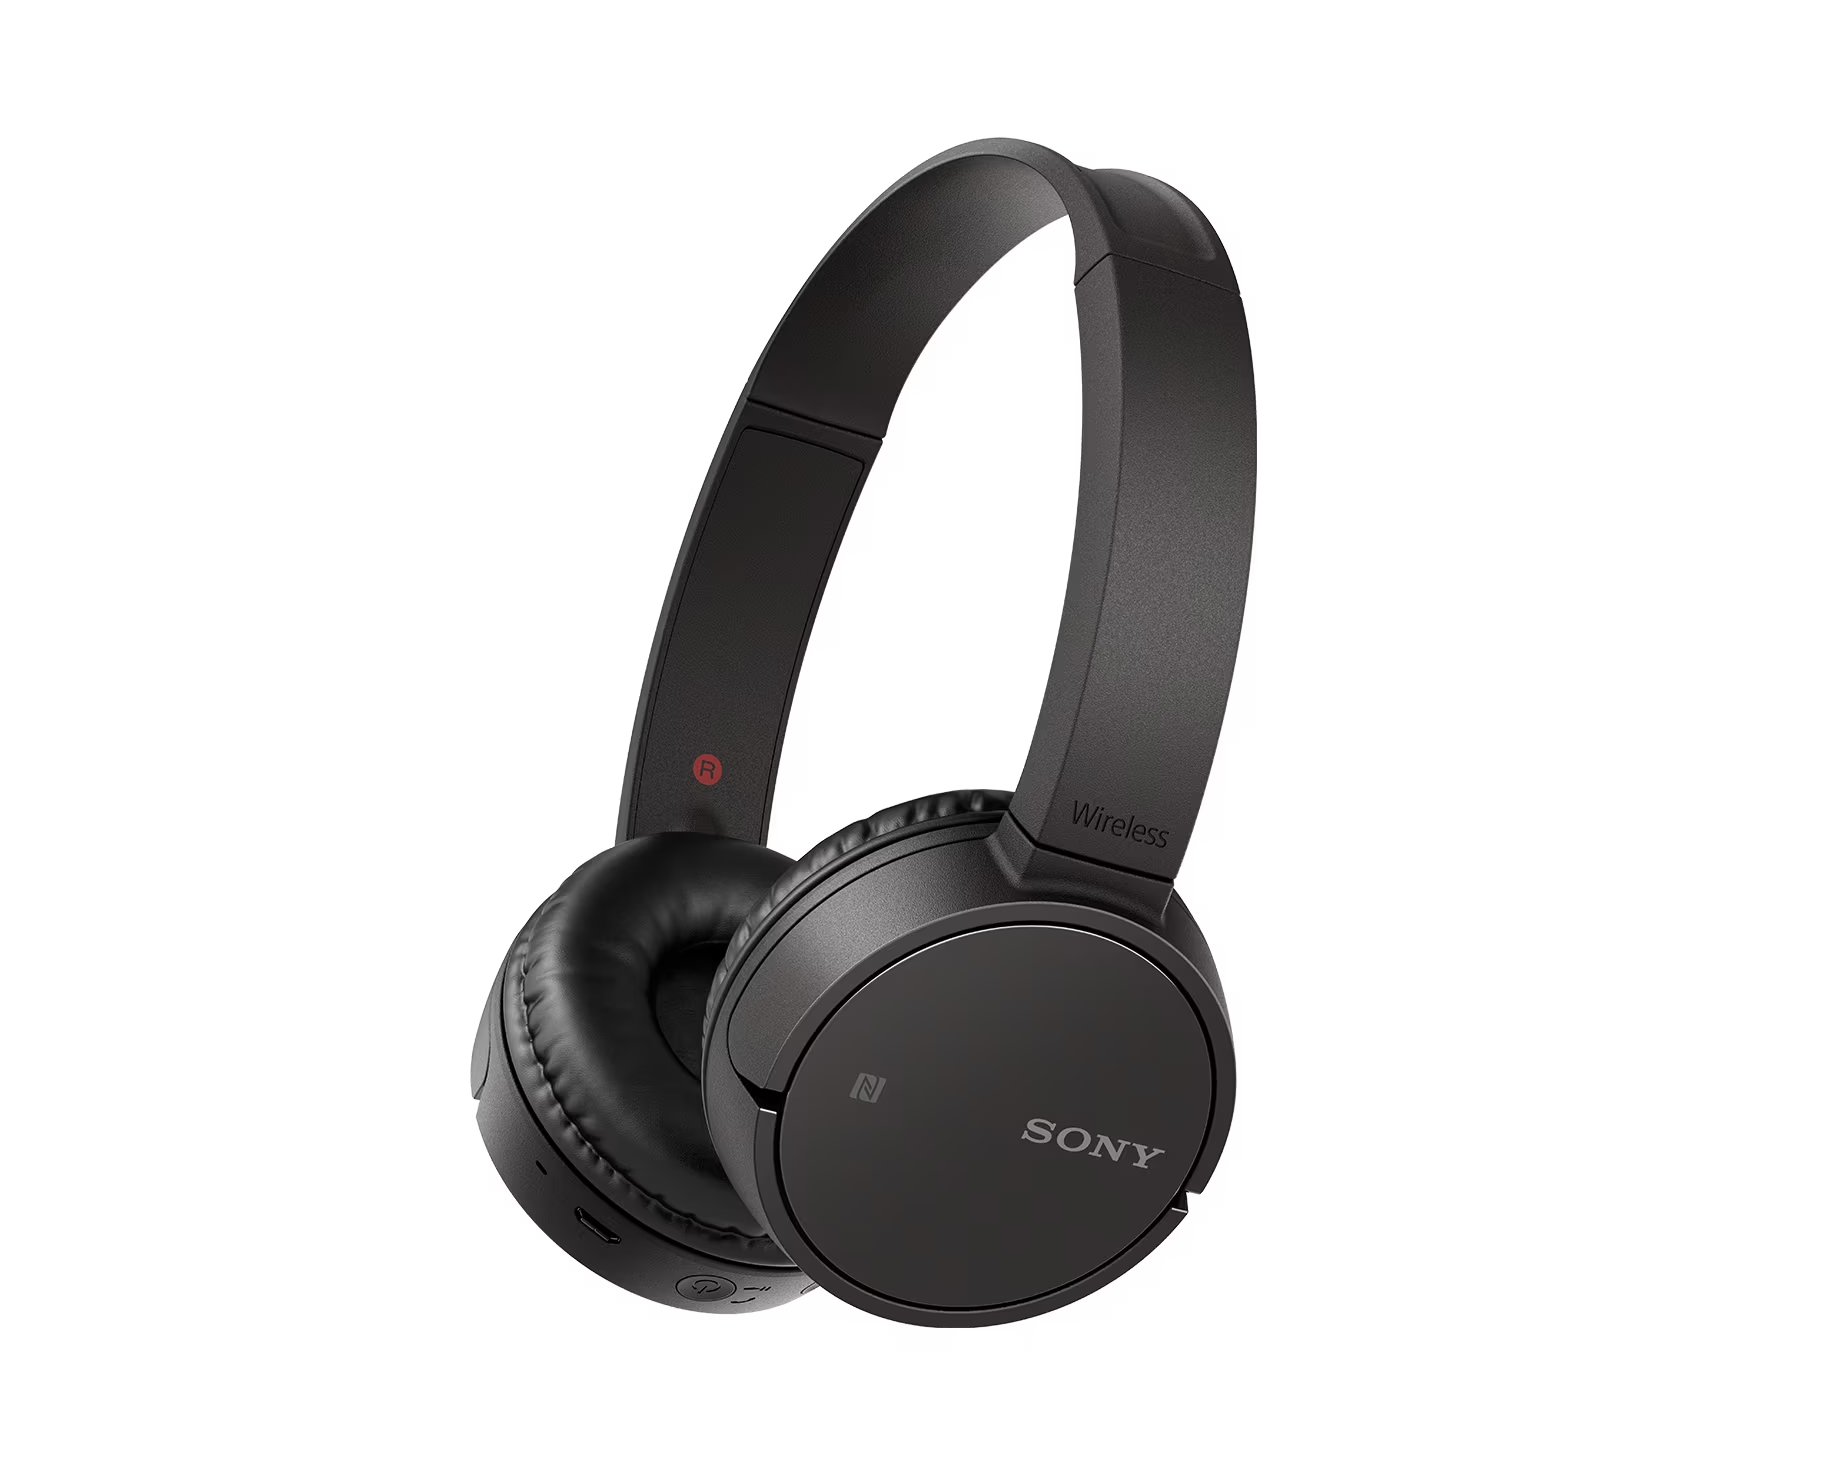 Sony WH-CH500 Wireless On-Ear Headphones, Black